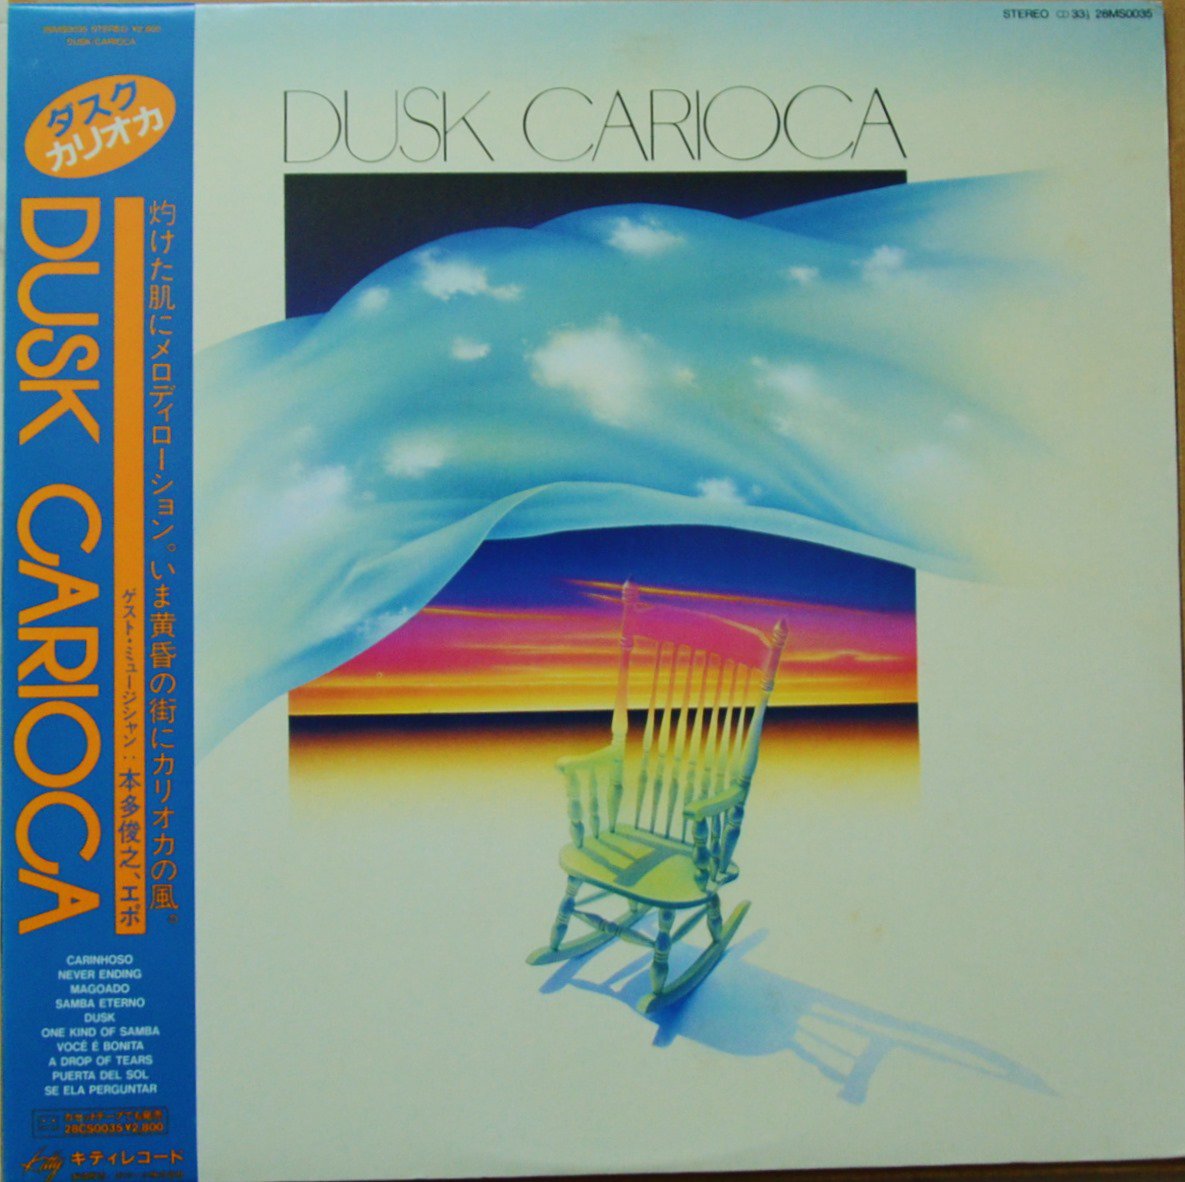 カリオカ CARIOCA / ダスク DUSK (LP)